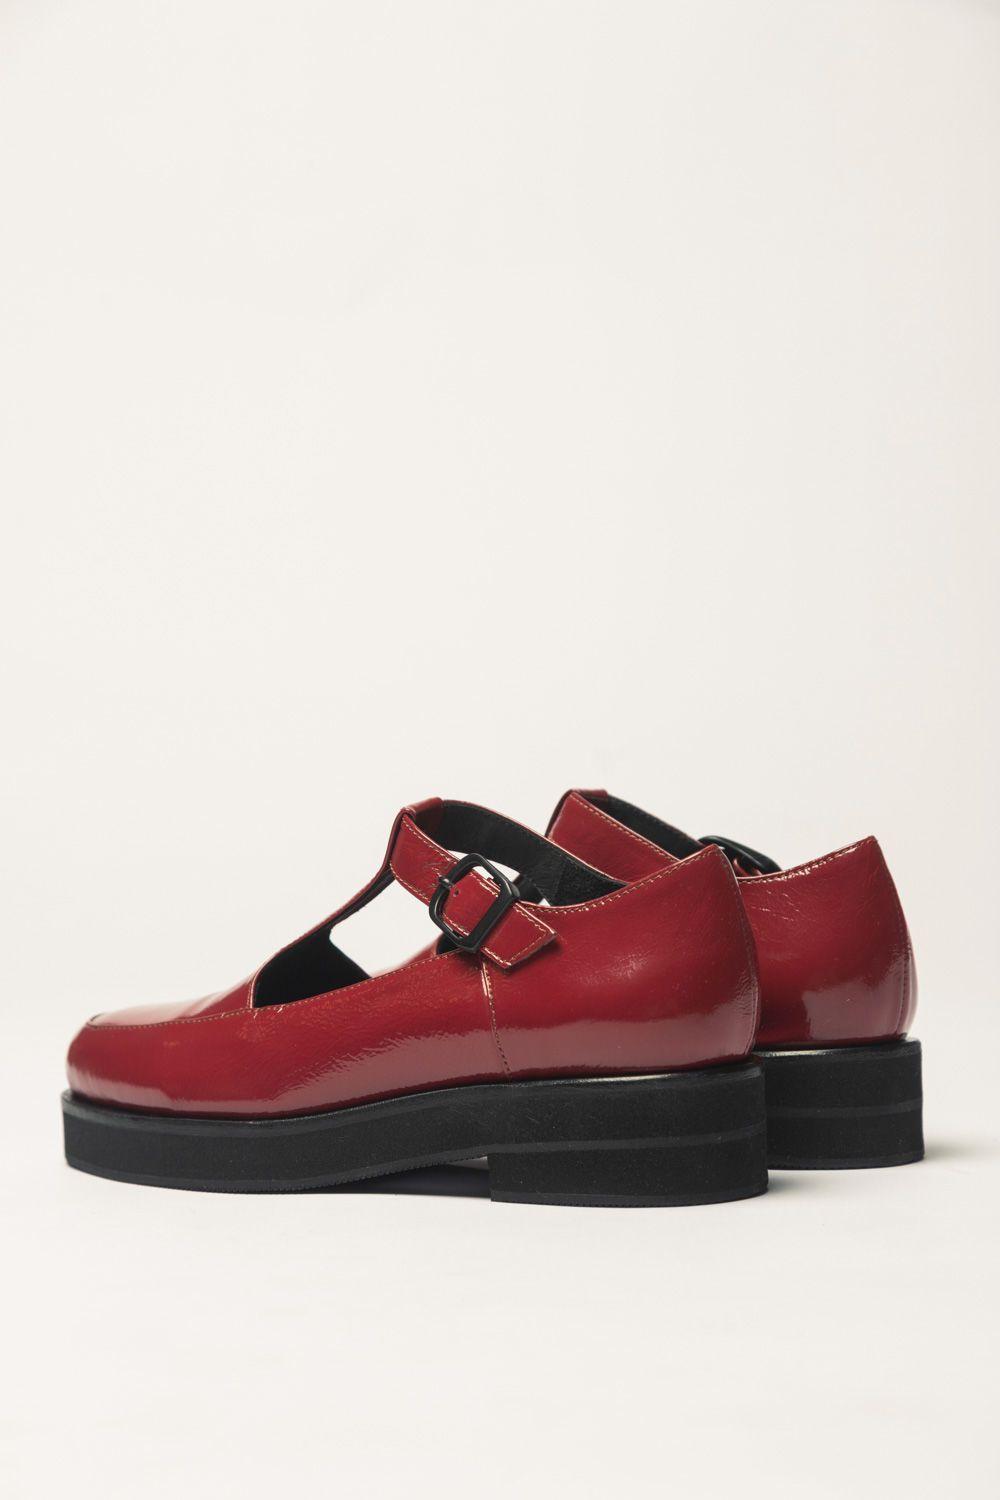 Zapato Guillermina Rojo 35